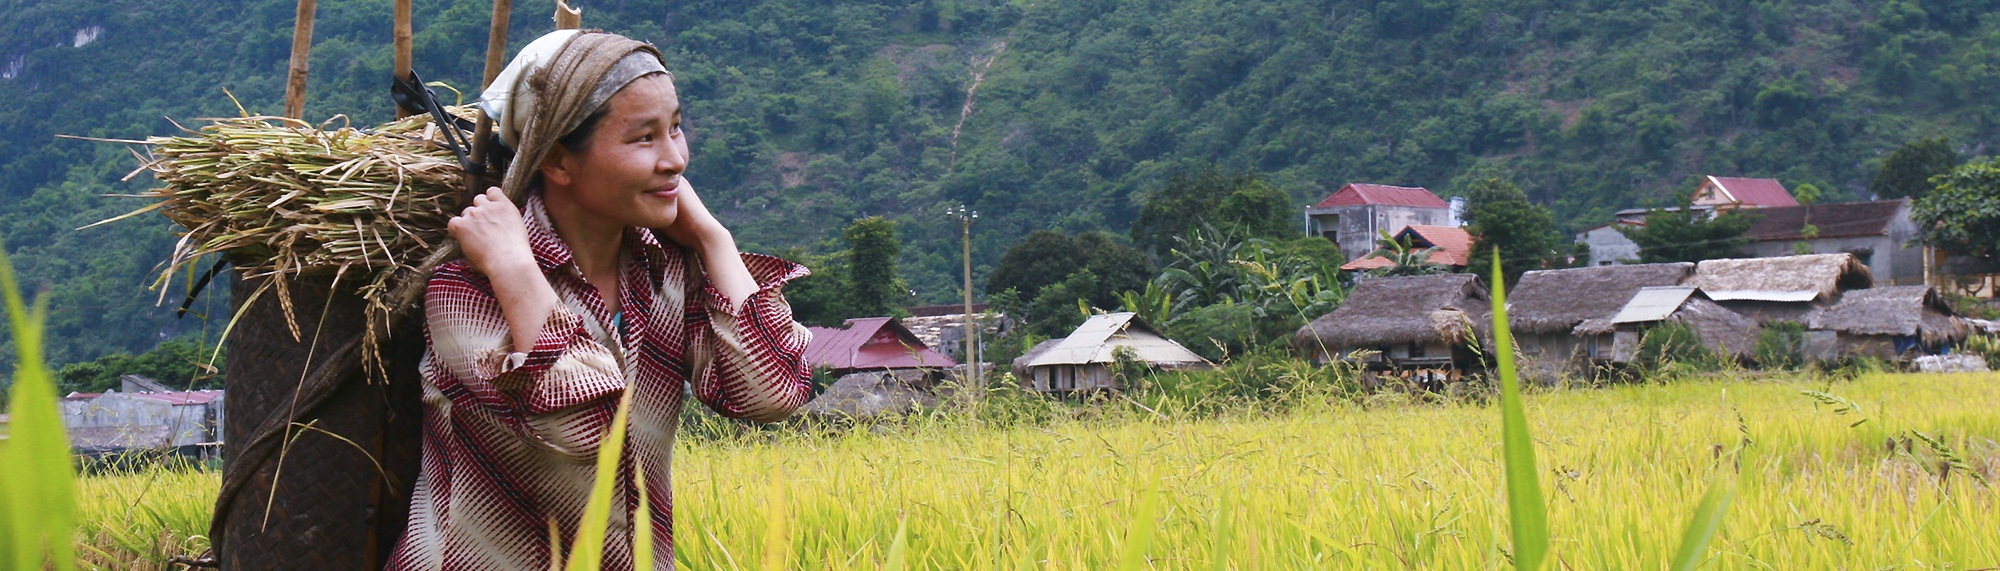 6 Days Trekking in Remote Places in North Vietnam